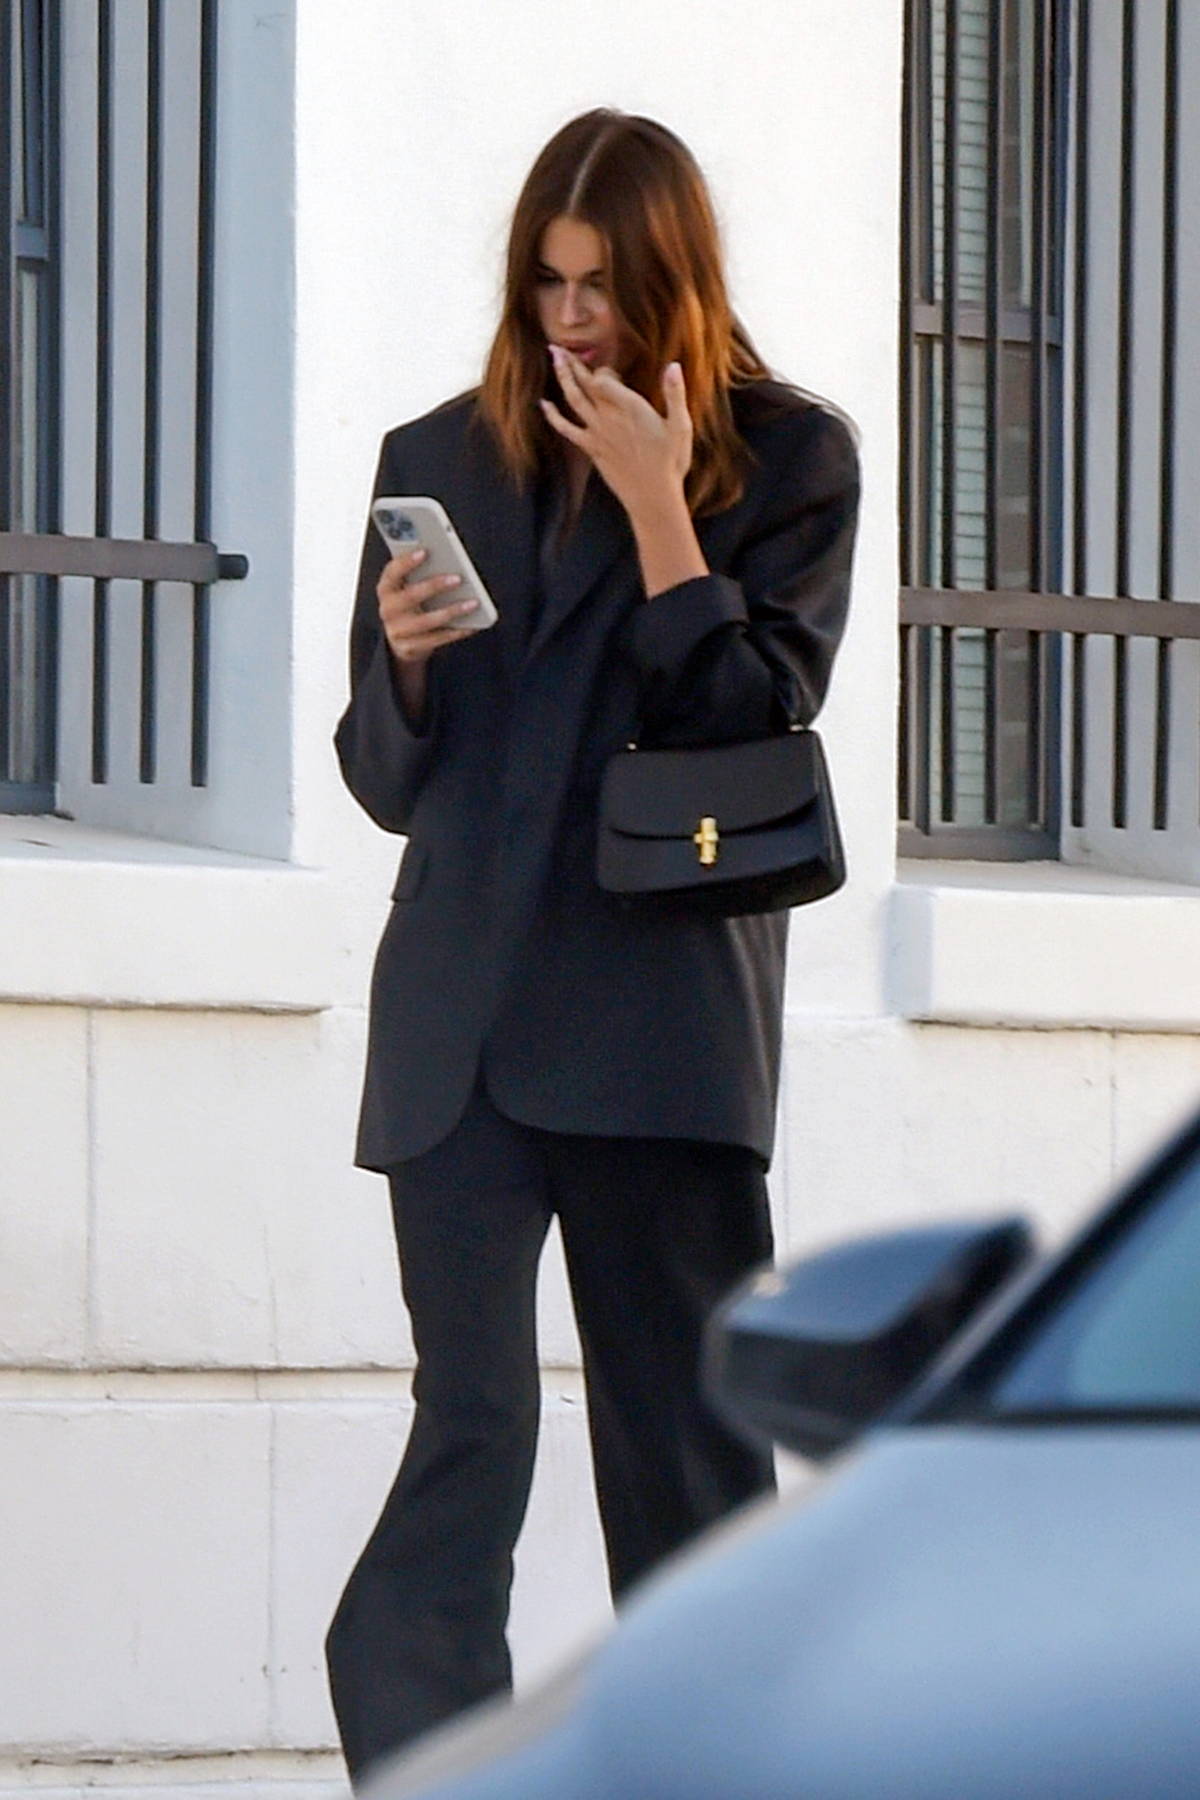 Jennifer Garner steps out in a black top, grey leggings paired